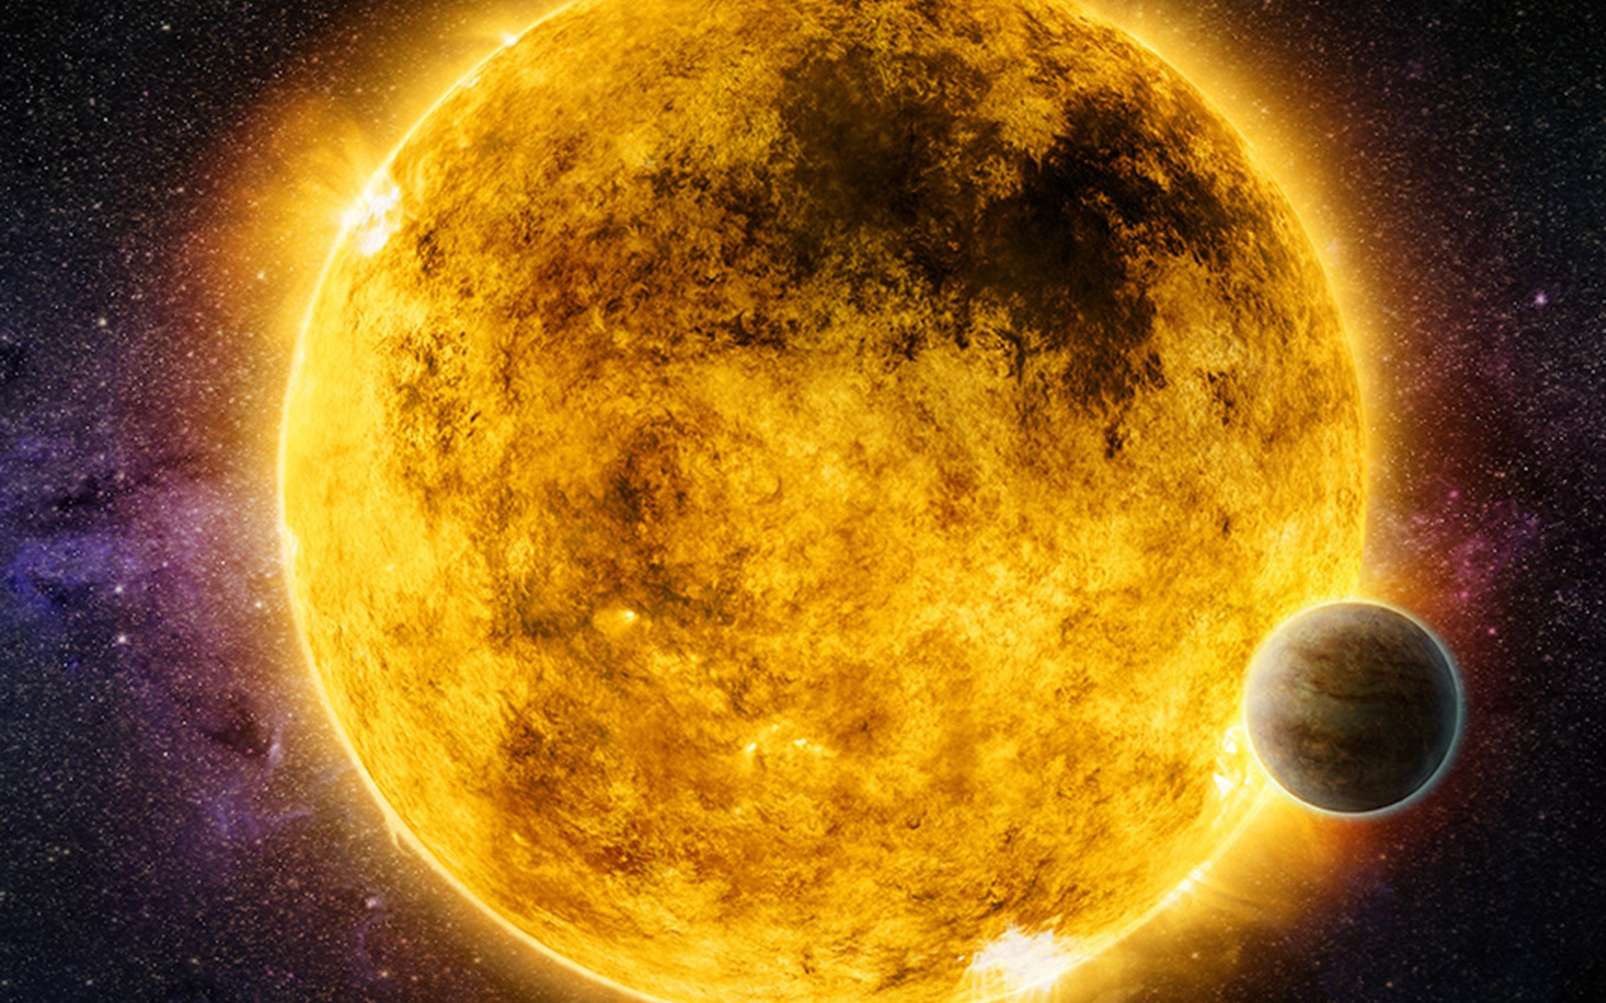 Le télescope Chandra teste en rayons X l'habitabilité d'exoplanètes proches